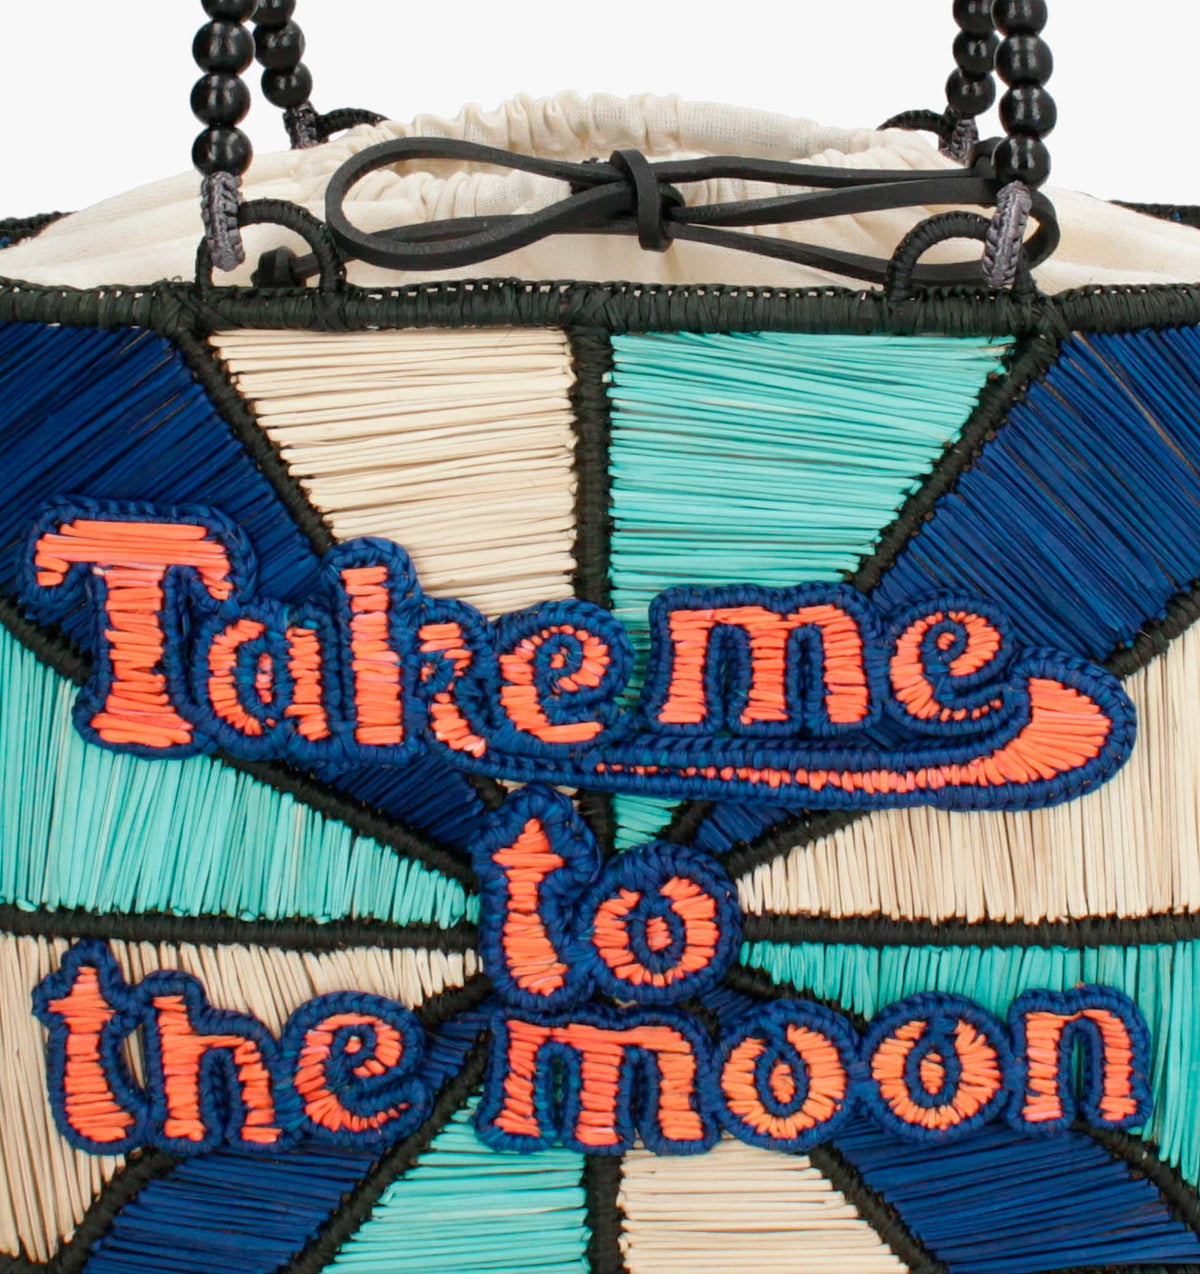 Take me To The Moon Handbag